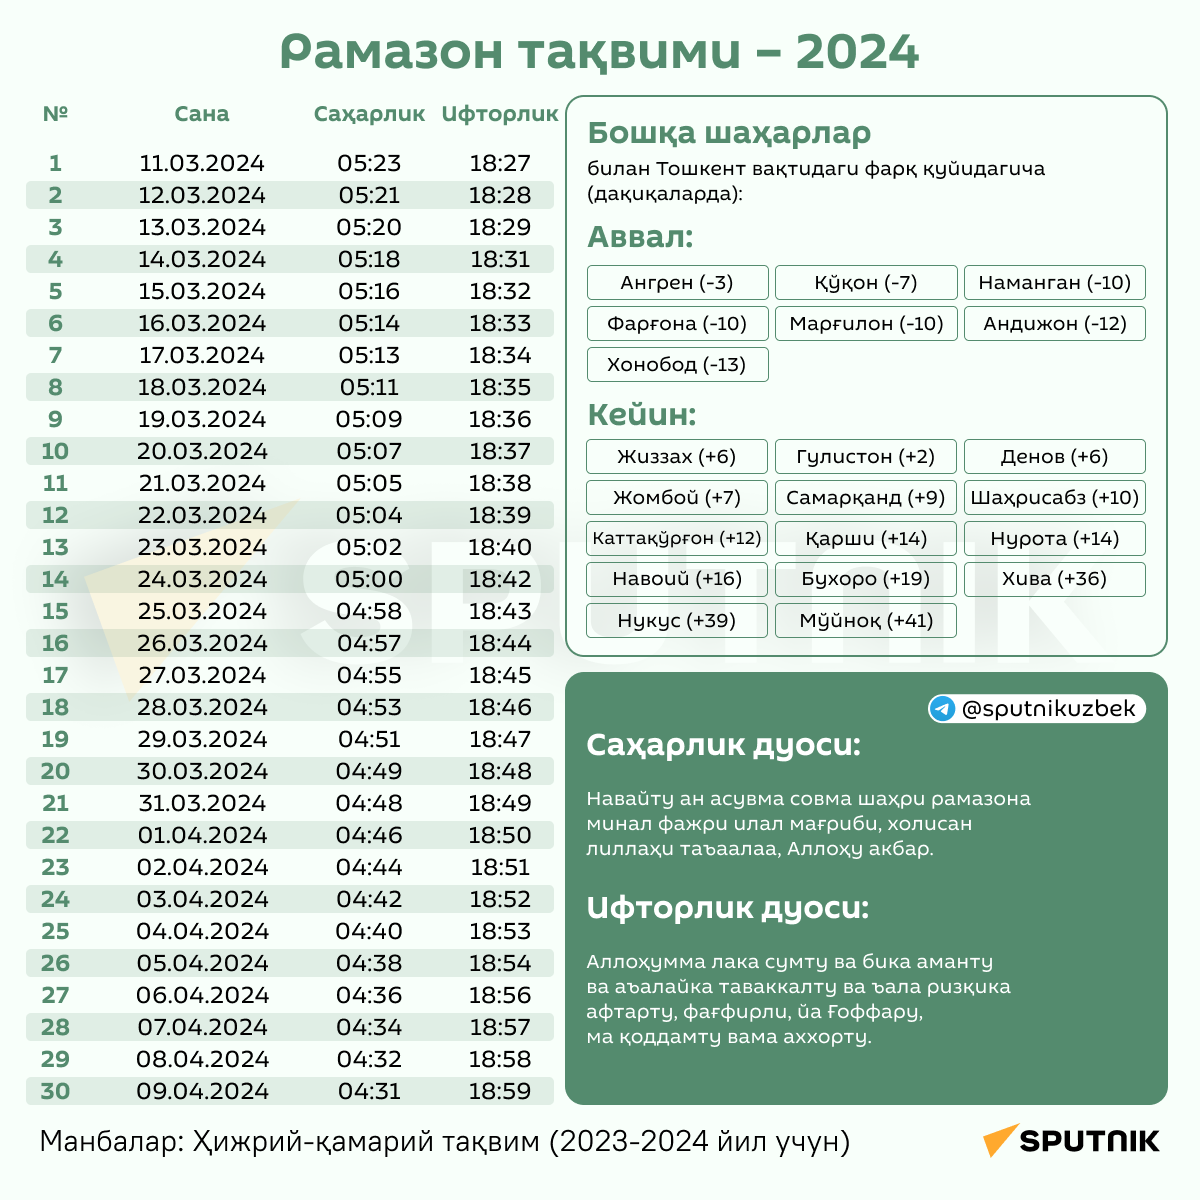 Рамазон тақвими 2024 – бутун республика - Sputnik Ўзбекистон